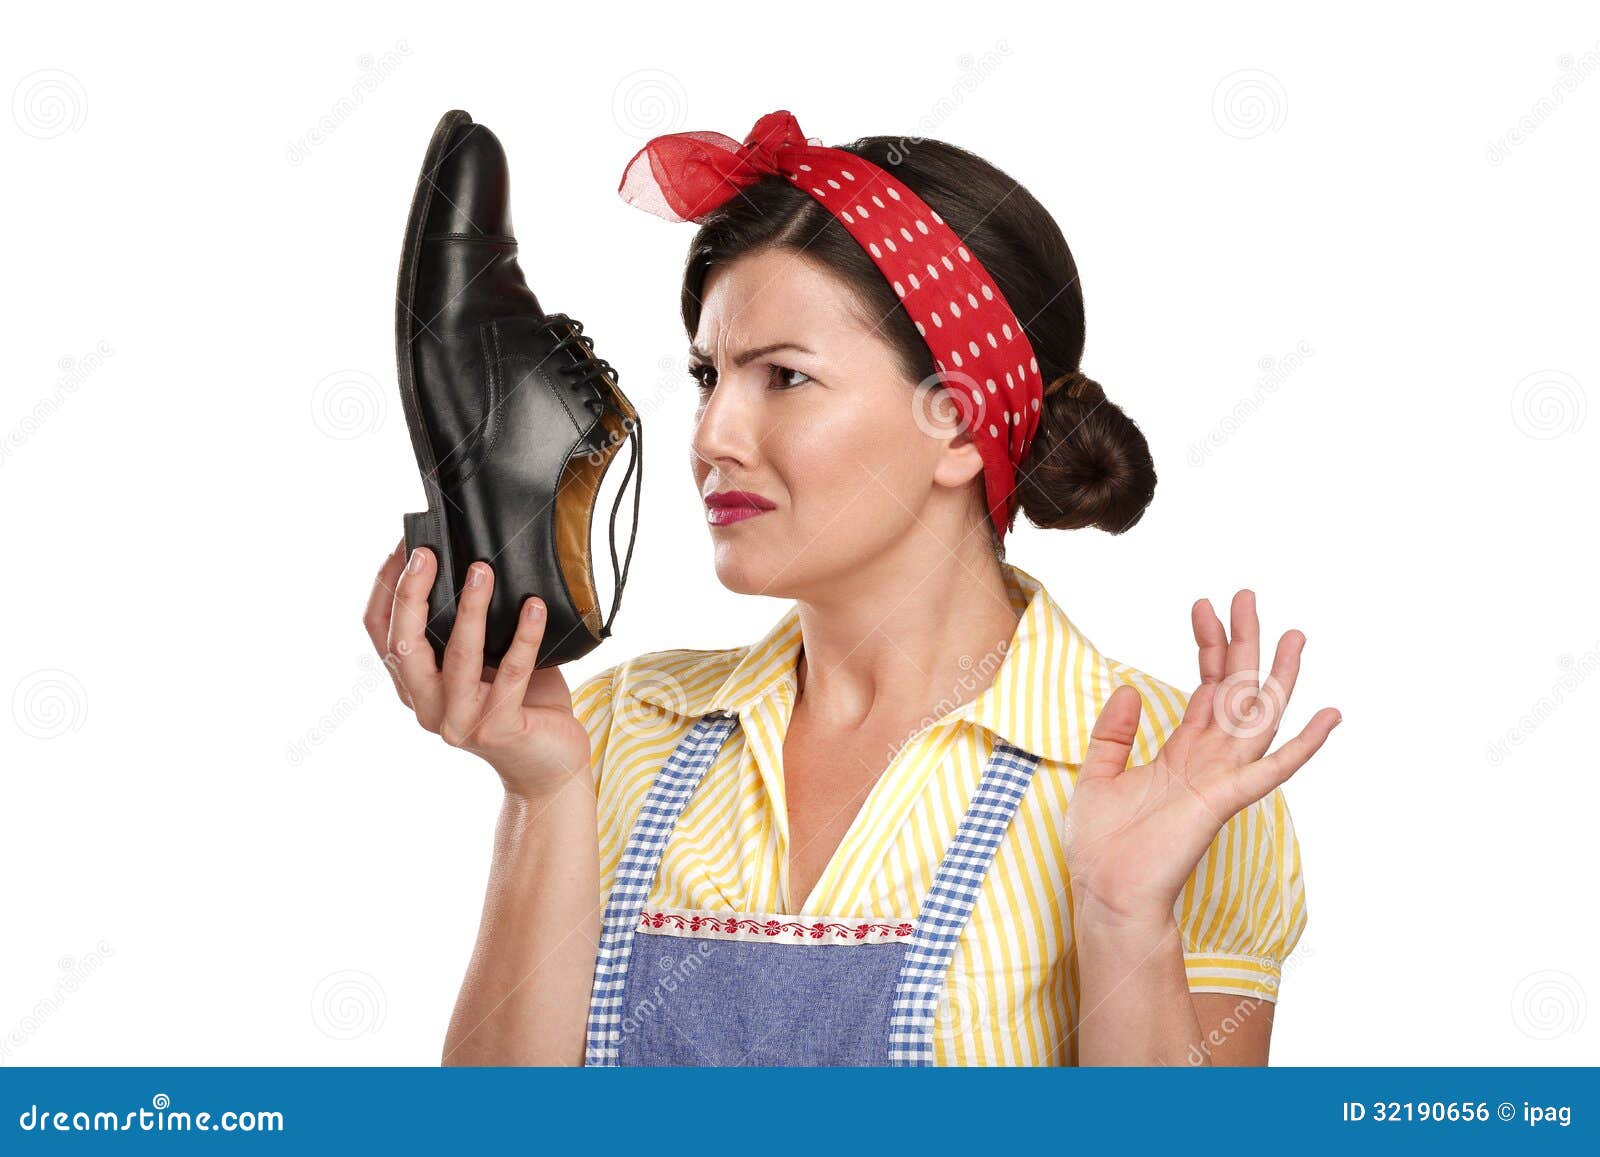 Очень воняет. Приятный запах от обуви. Запах с обуви фото. Женщина держит вонючую обувь. Вонючие женские туфли.